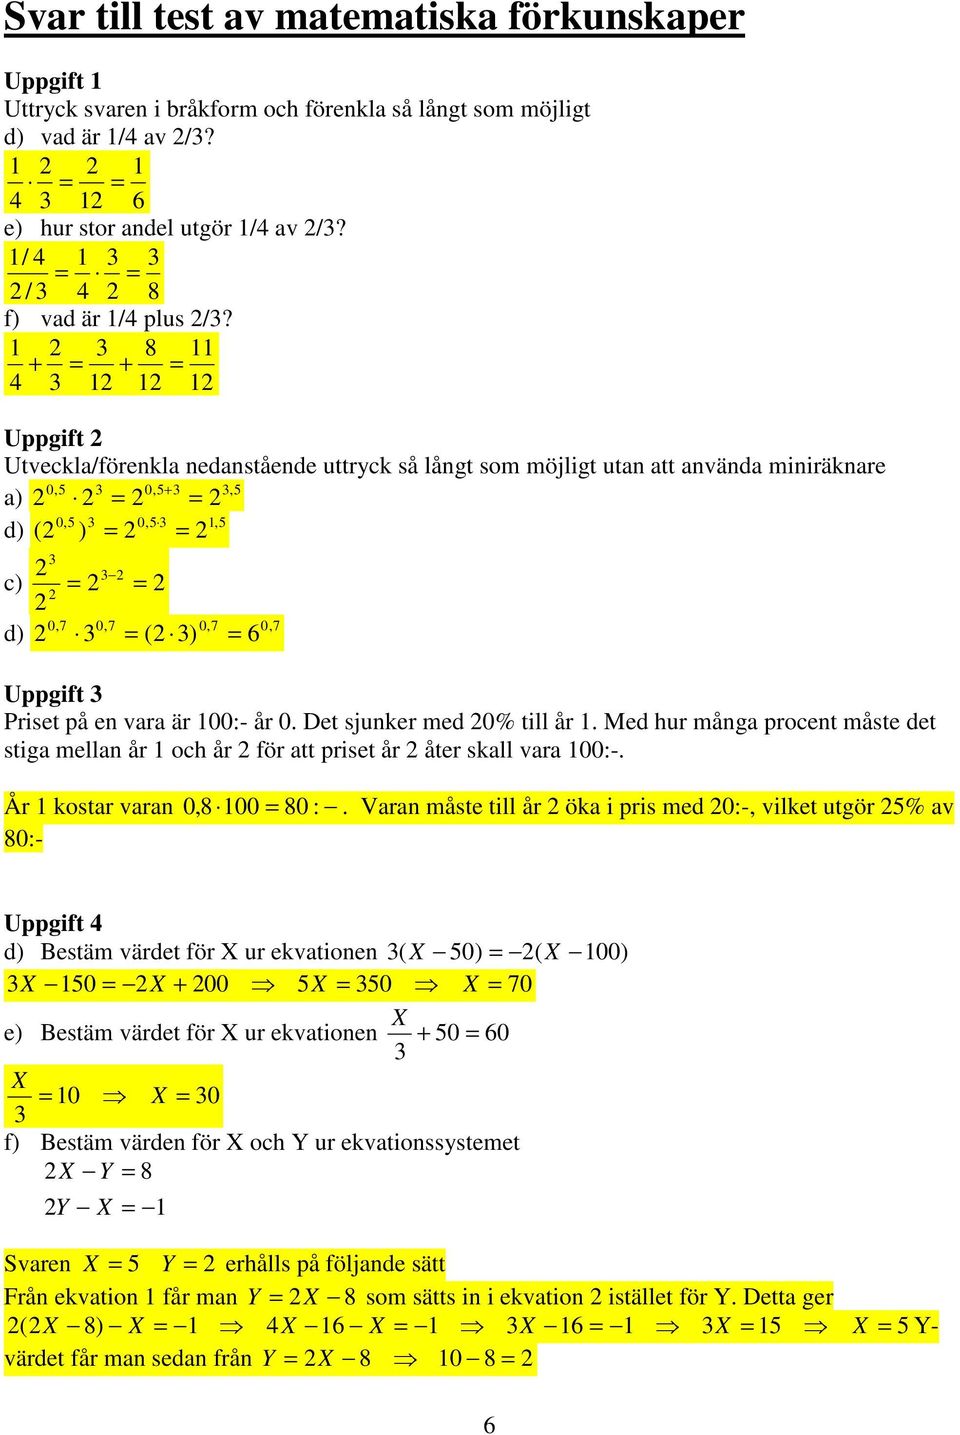 1 3 8 11 + = + = 4 3 1 1 1 Uppgift Utveckla/förenkla nedanstående uttryck så långt som möjligt utan att använda miniräknare 0,5 3 0,5+ 3 3,5 a) = = 0,5 3 0,5 3 1,5 d) ( ) = = 3 3 c) = = 0,7 0,7 0,7